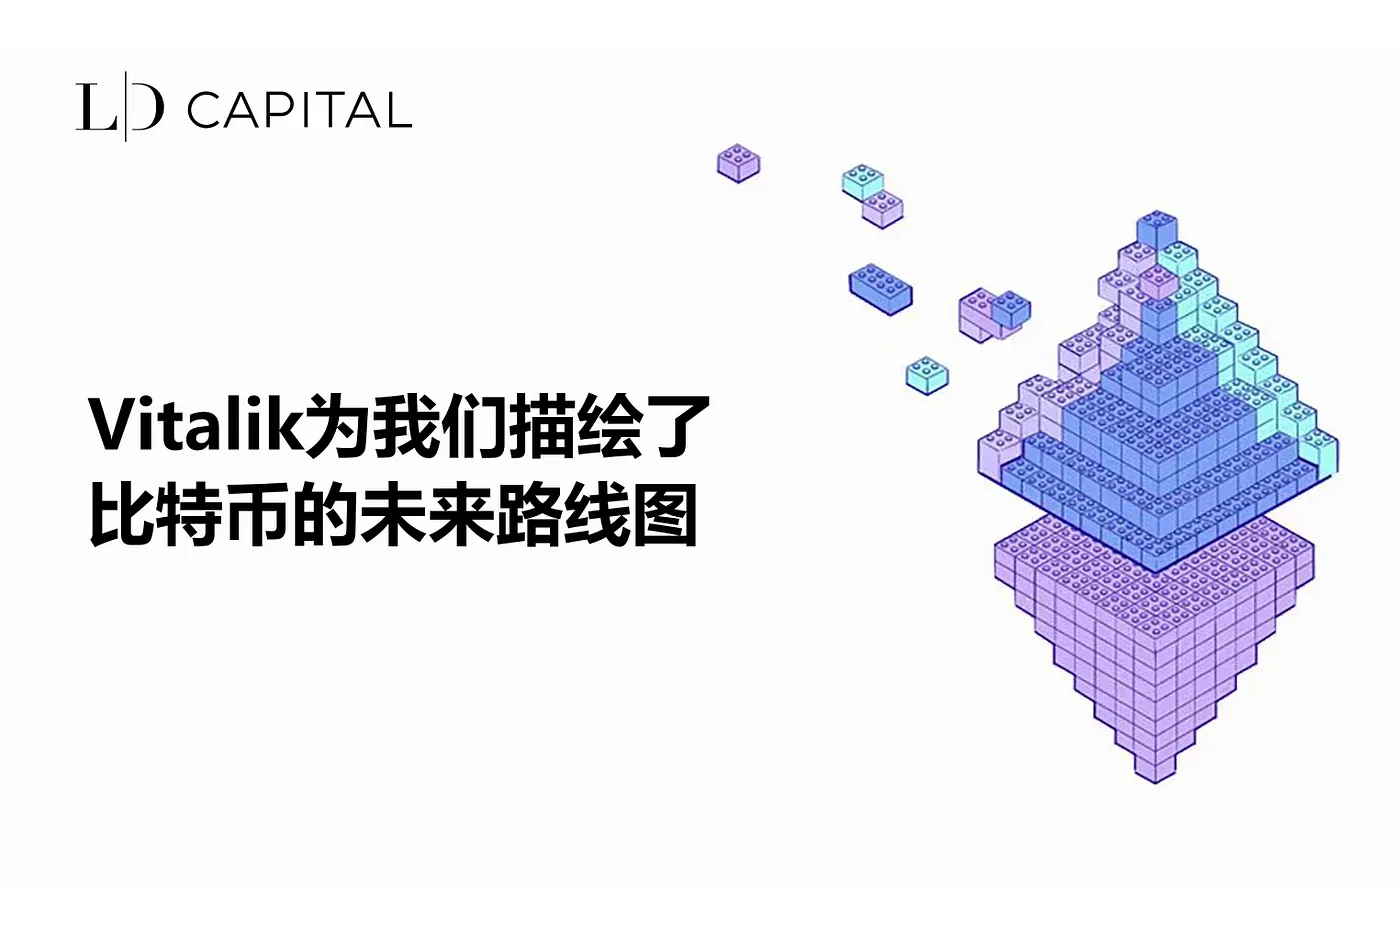 LD Capital：Vitalik为我们描绘了比特币的未来路线图